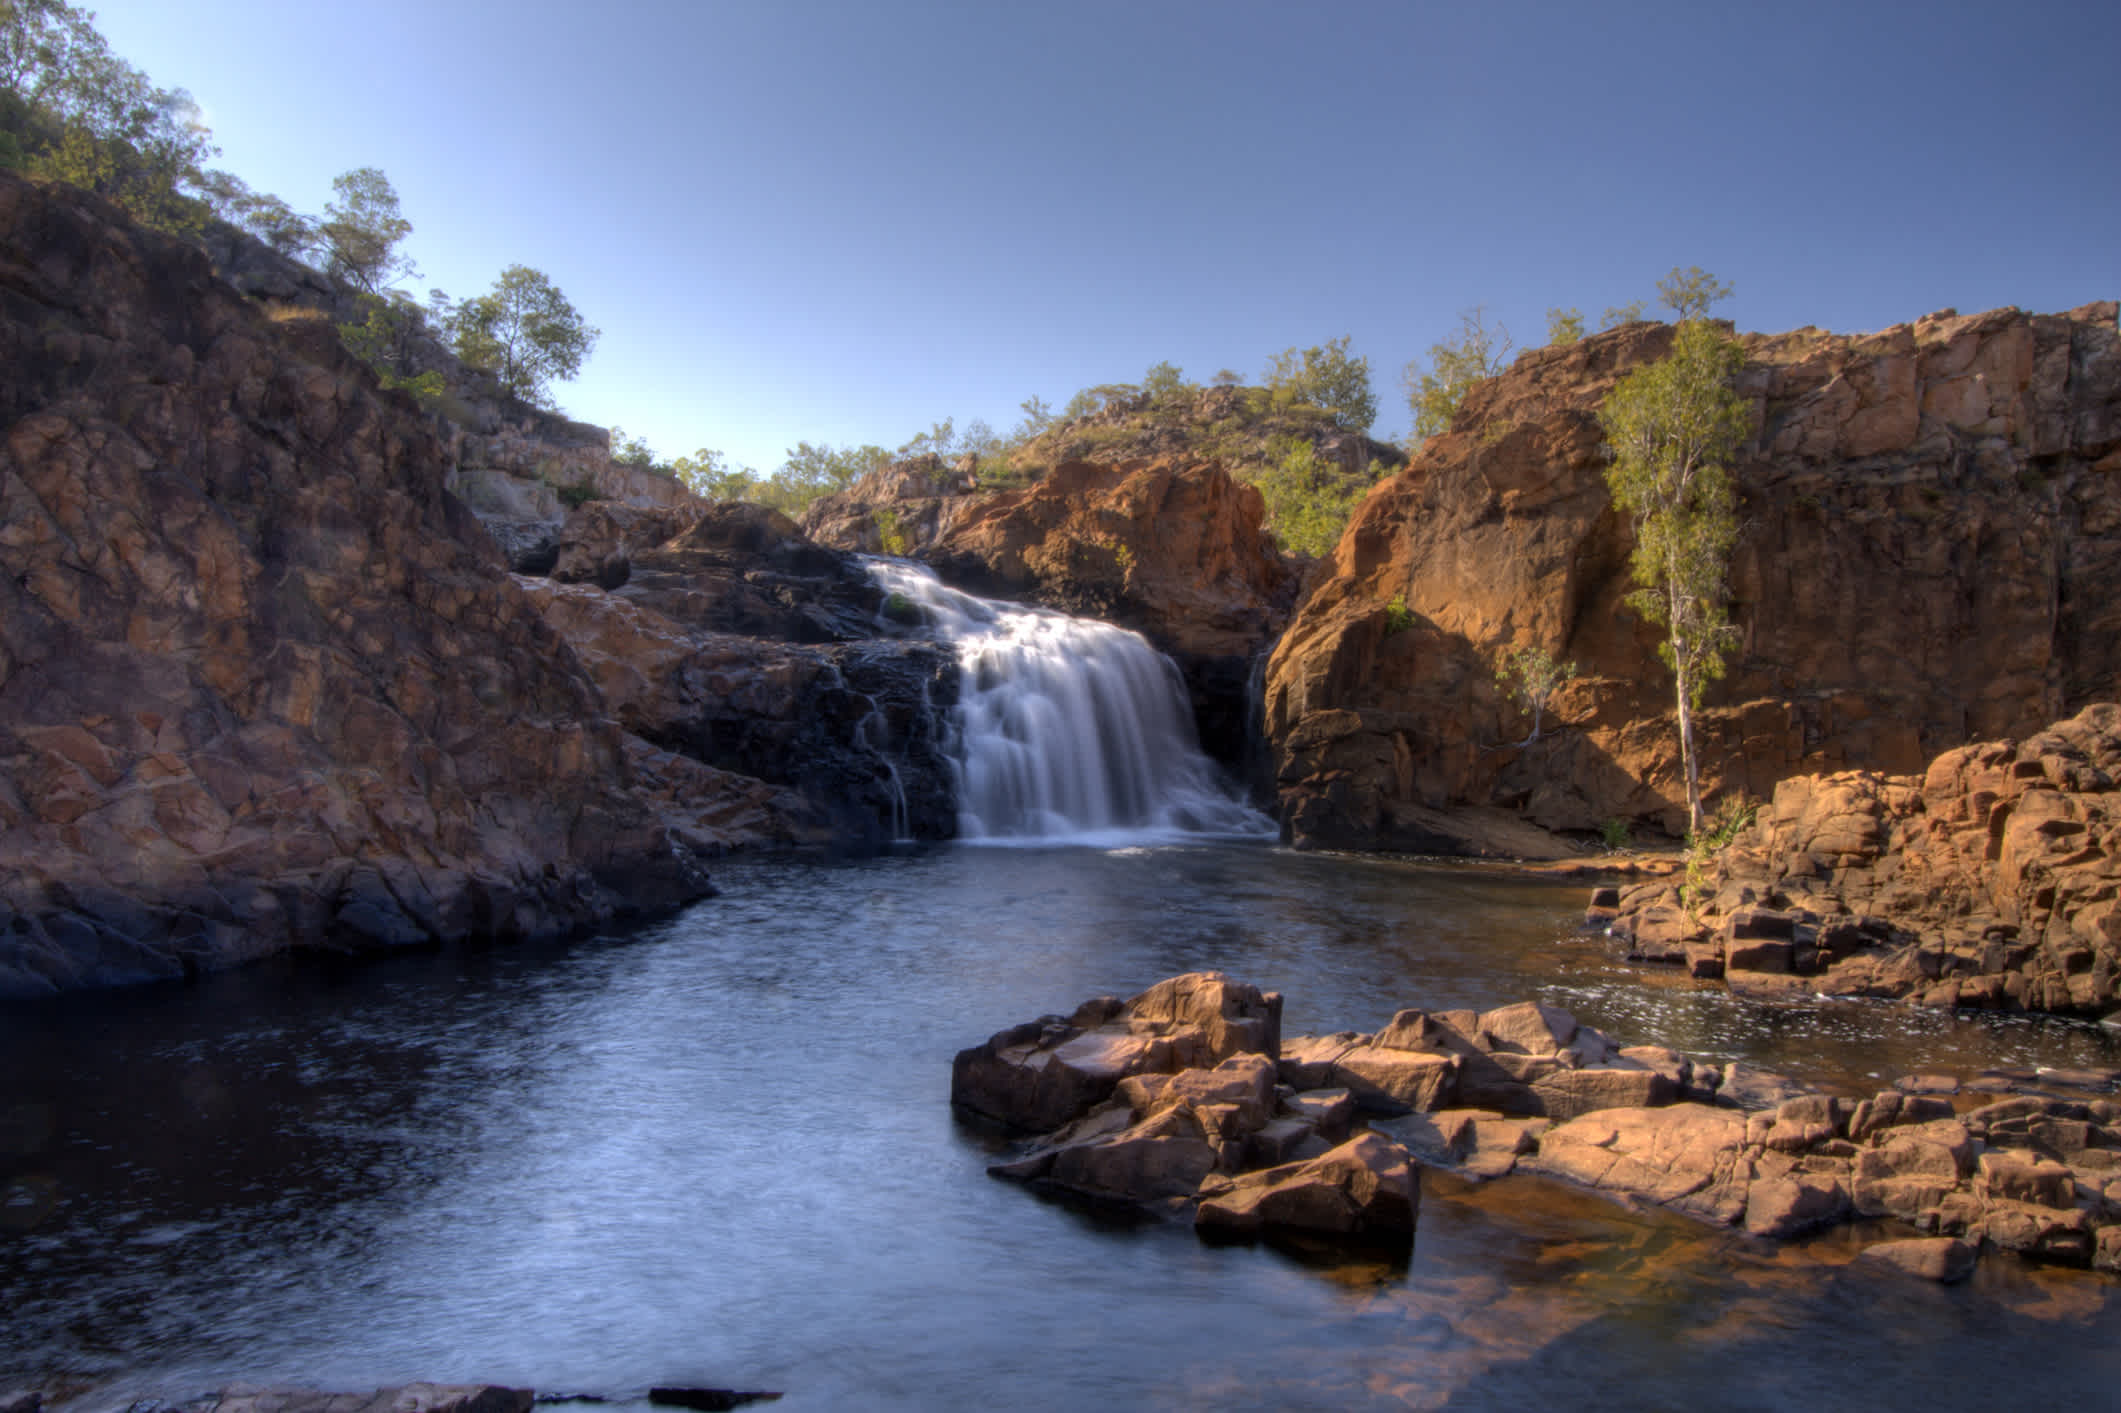 Les magnifiques chutes Edith Falls dans le parc national australien de Nitmiluk.